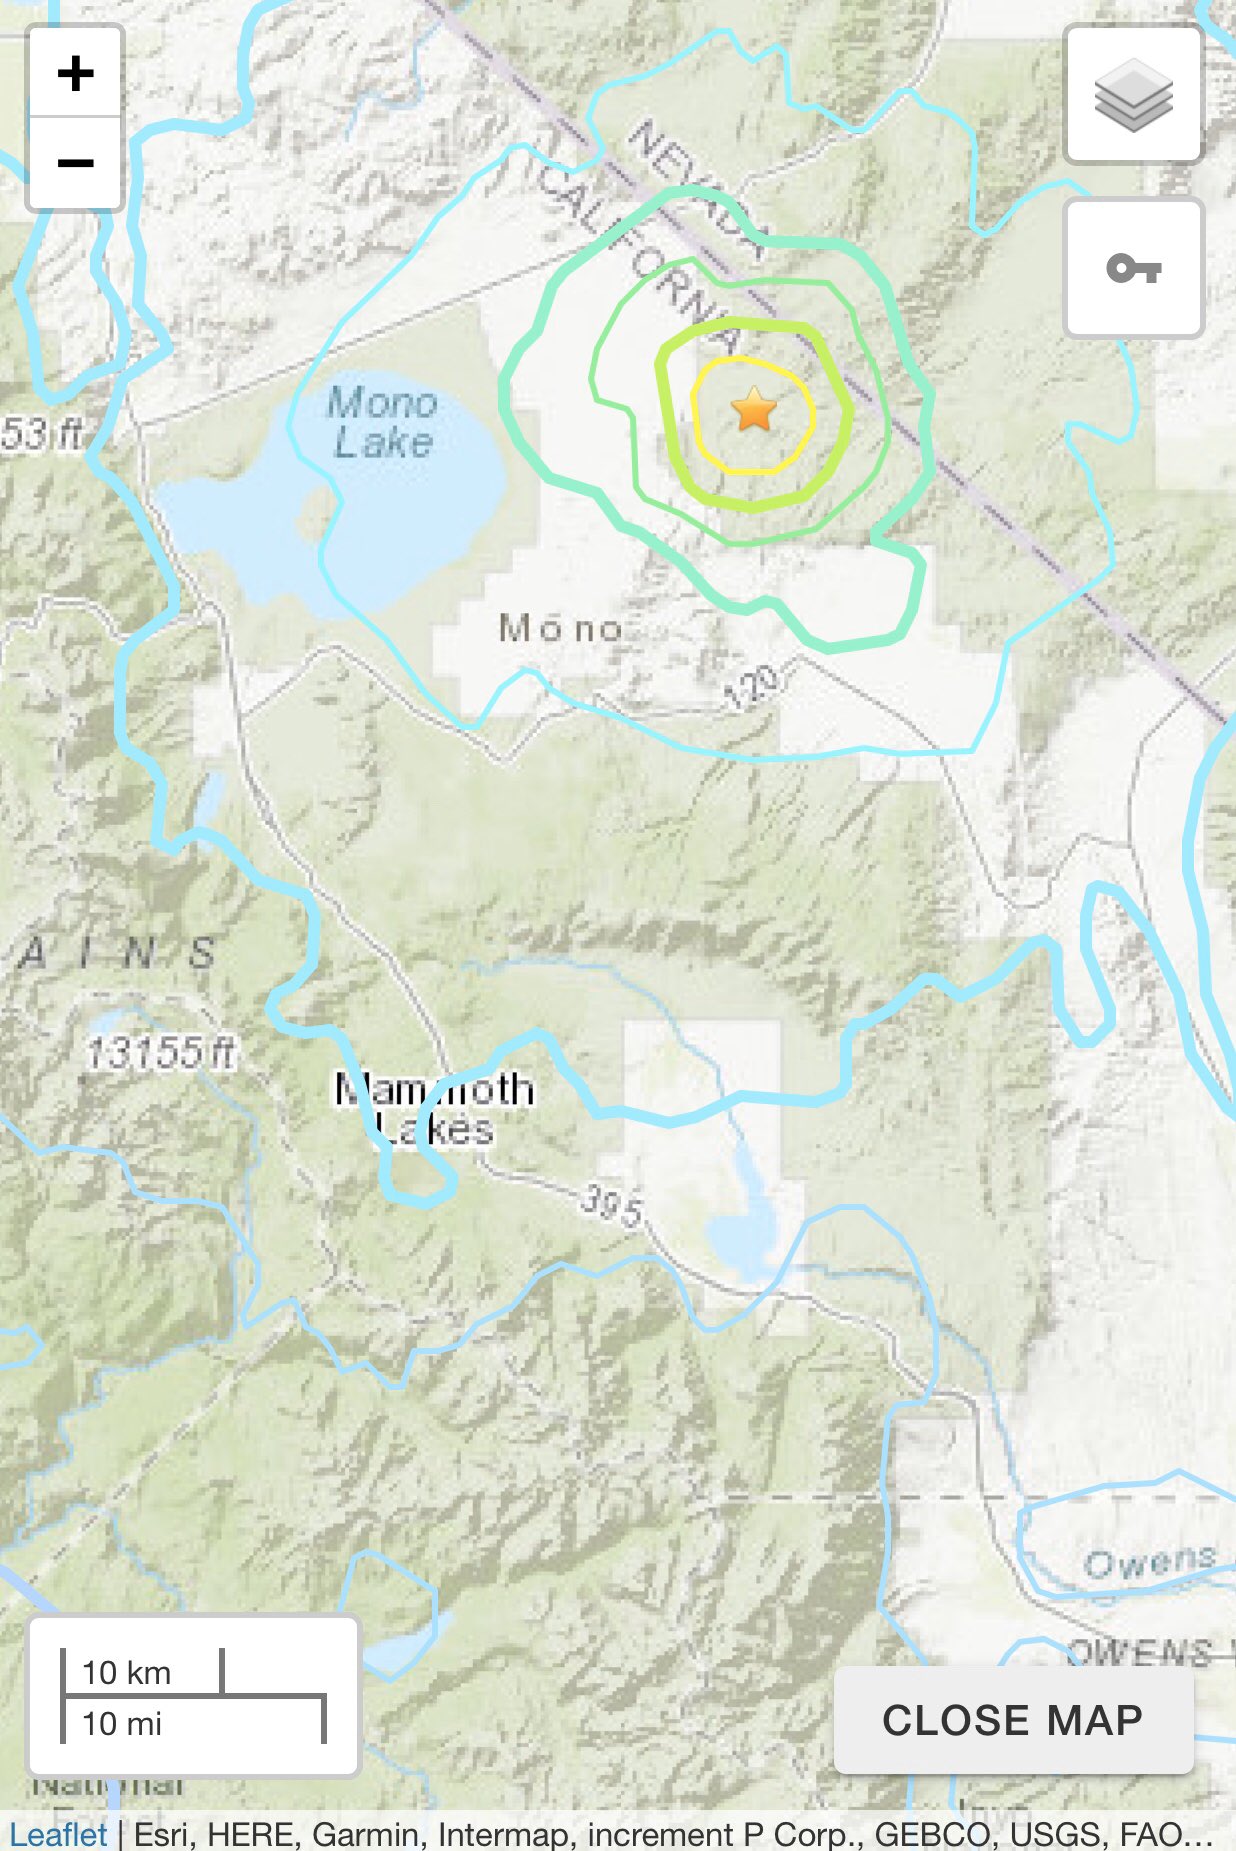 美国加州东部猛犸湖附近发生系列地震